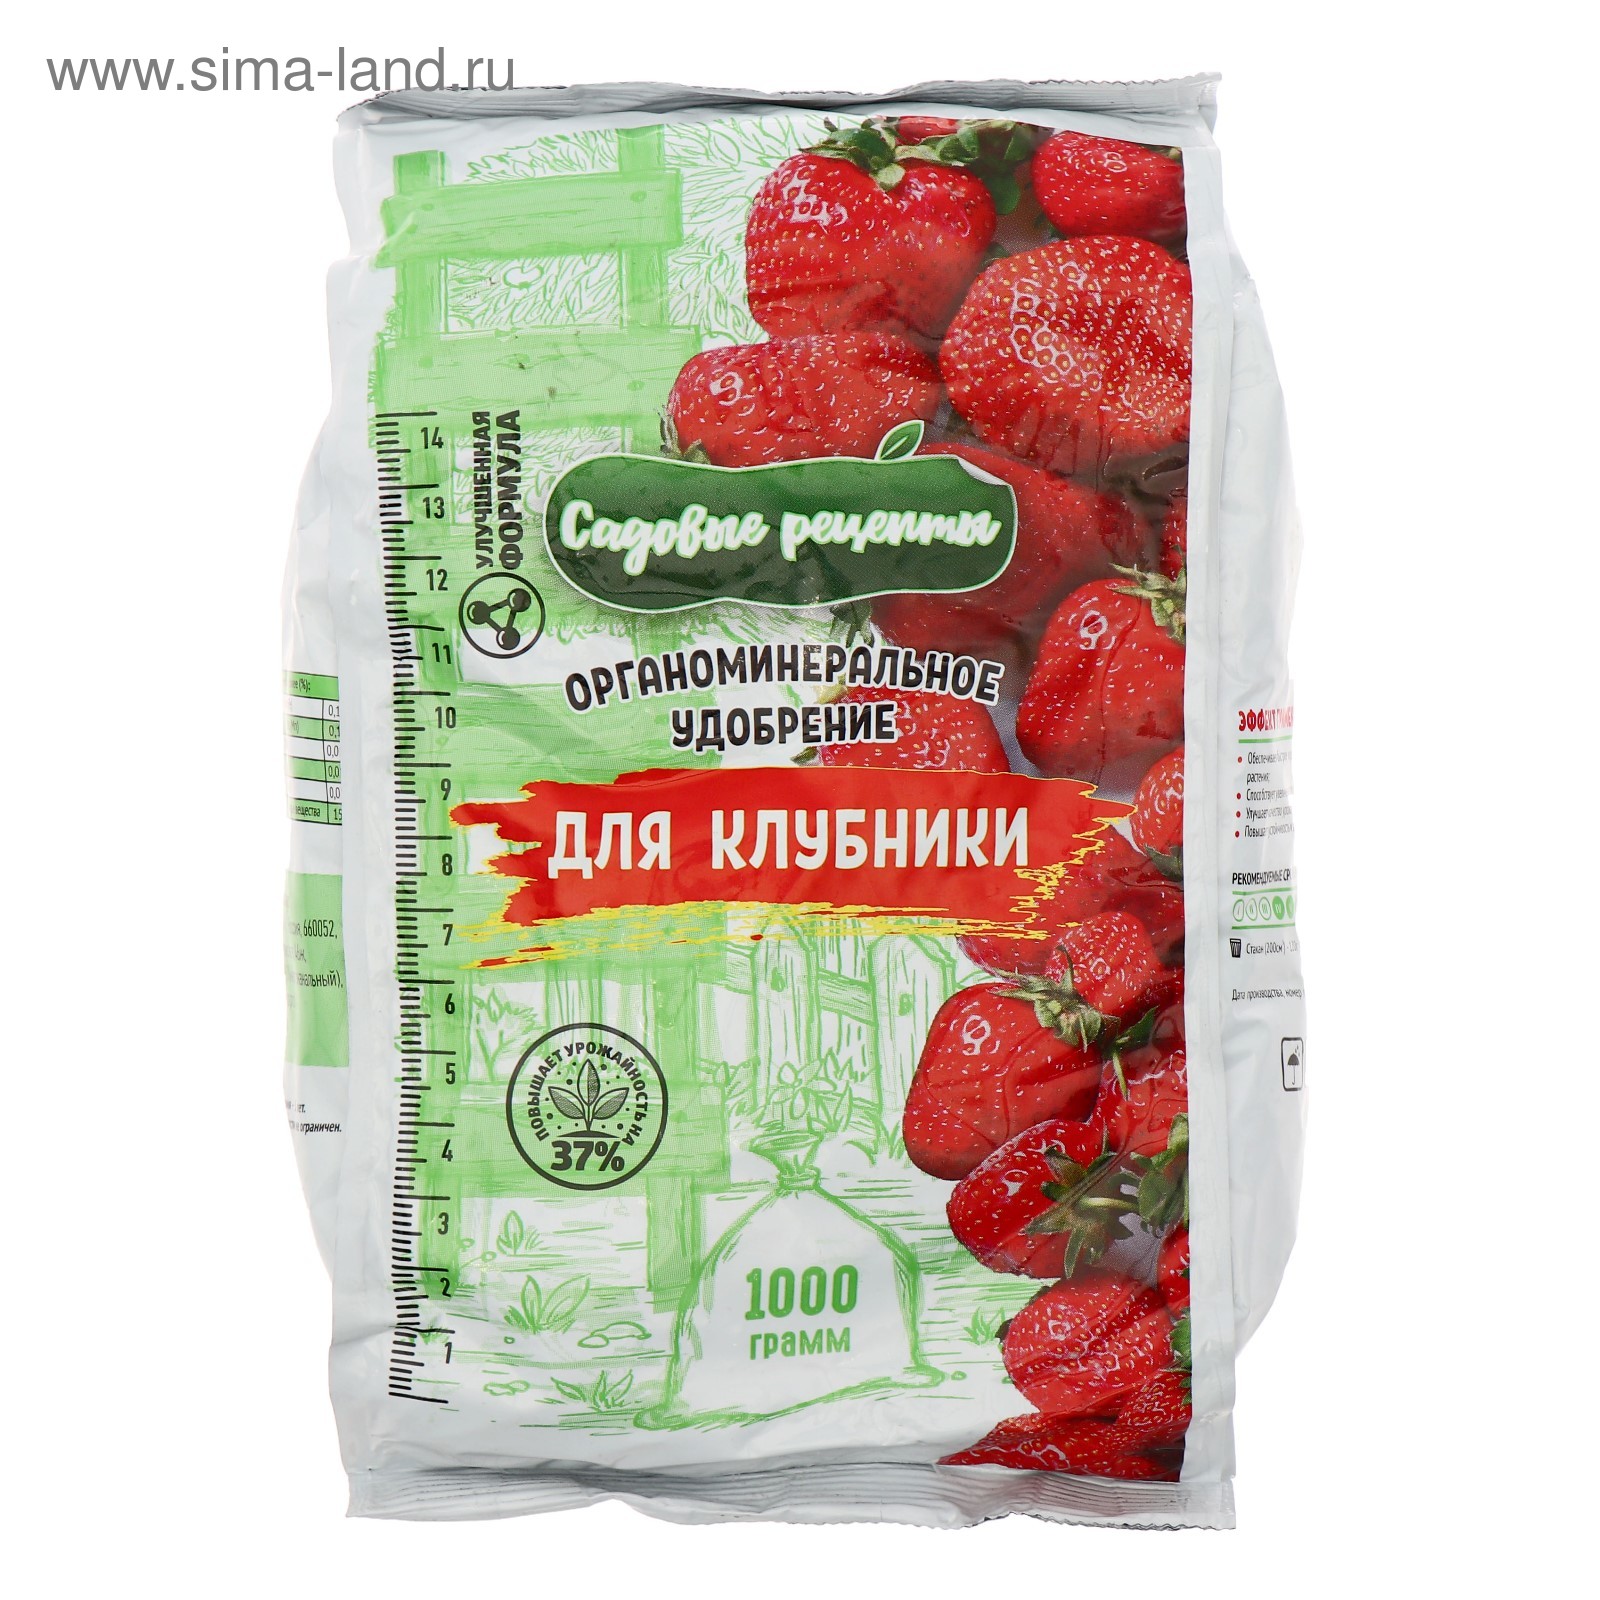 Органоминеральное удобрение для Клубники, Садовые рецепты,1 кг (4859957) -Купить по цене от 80.00 руб.